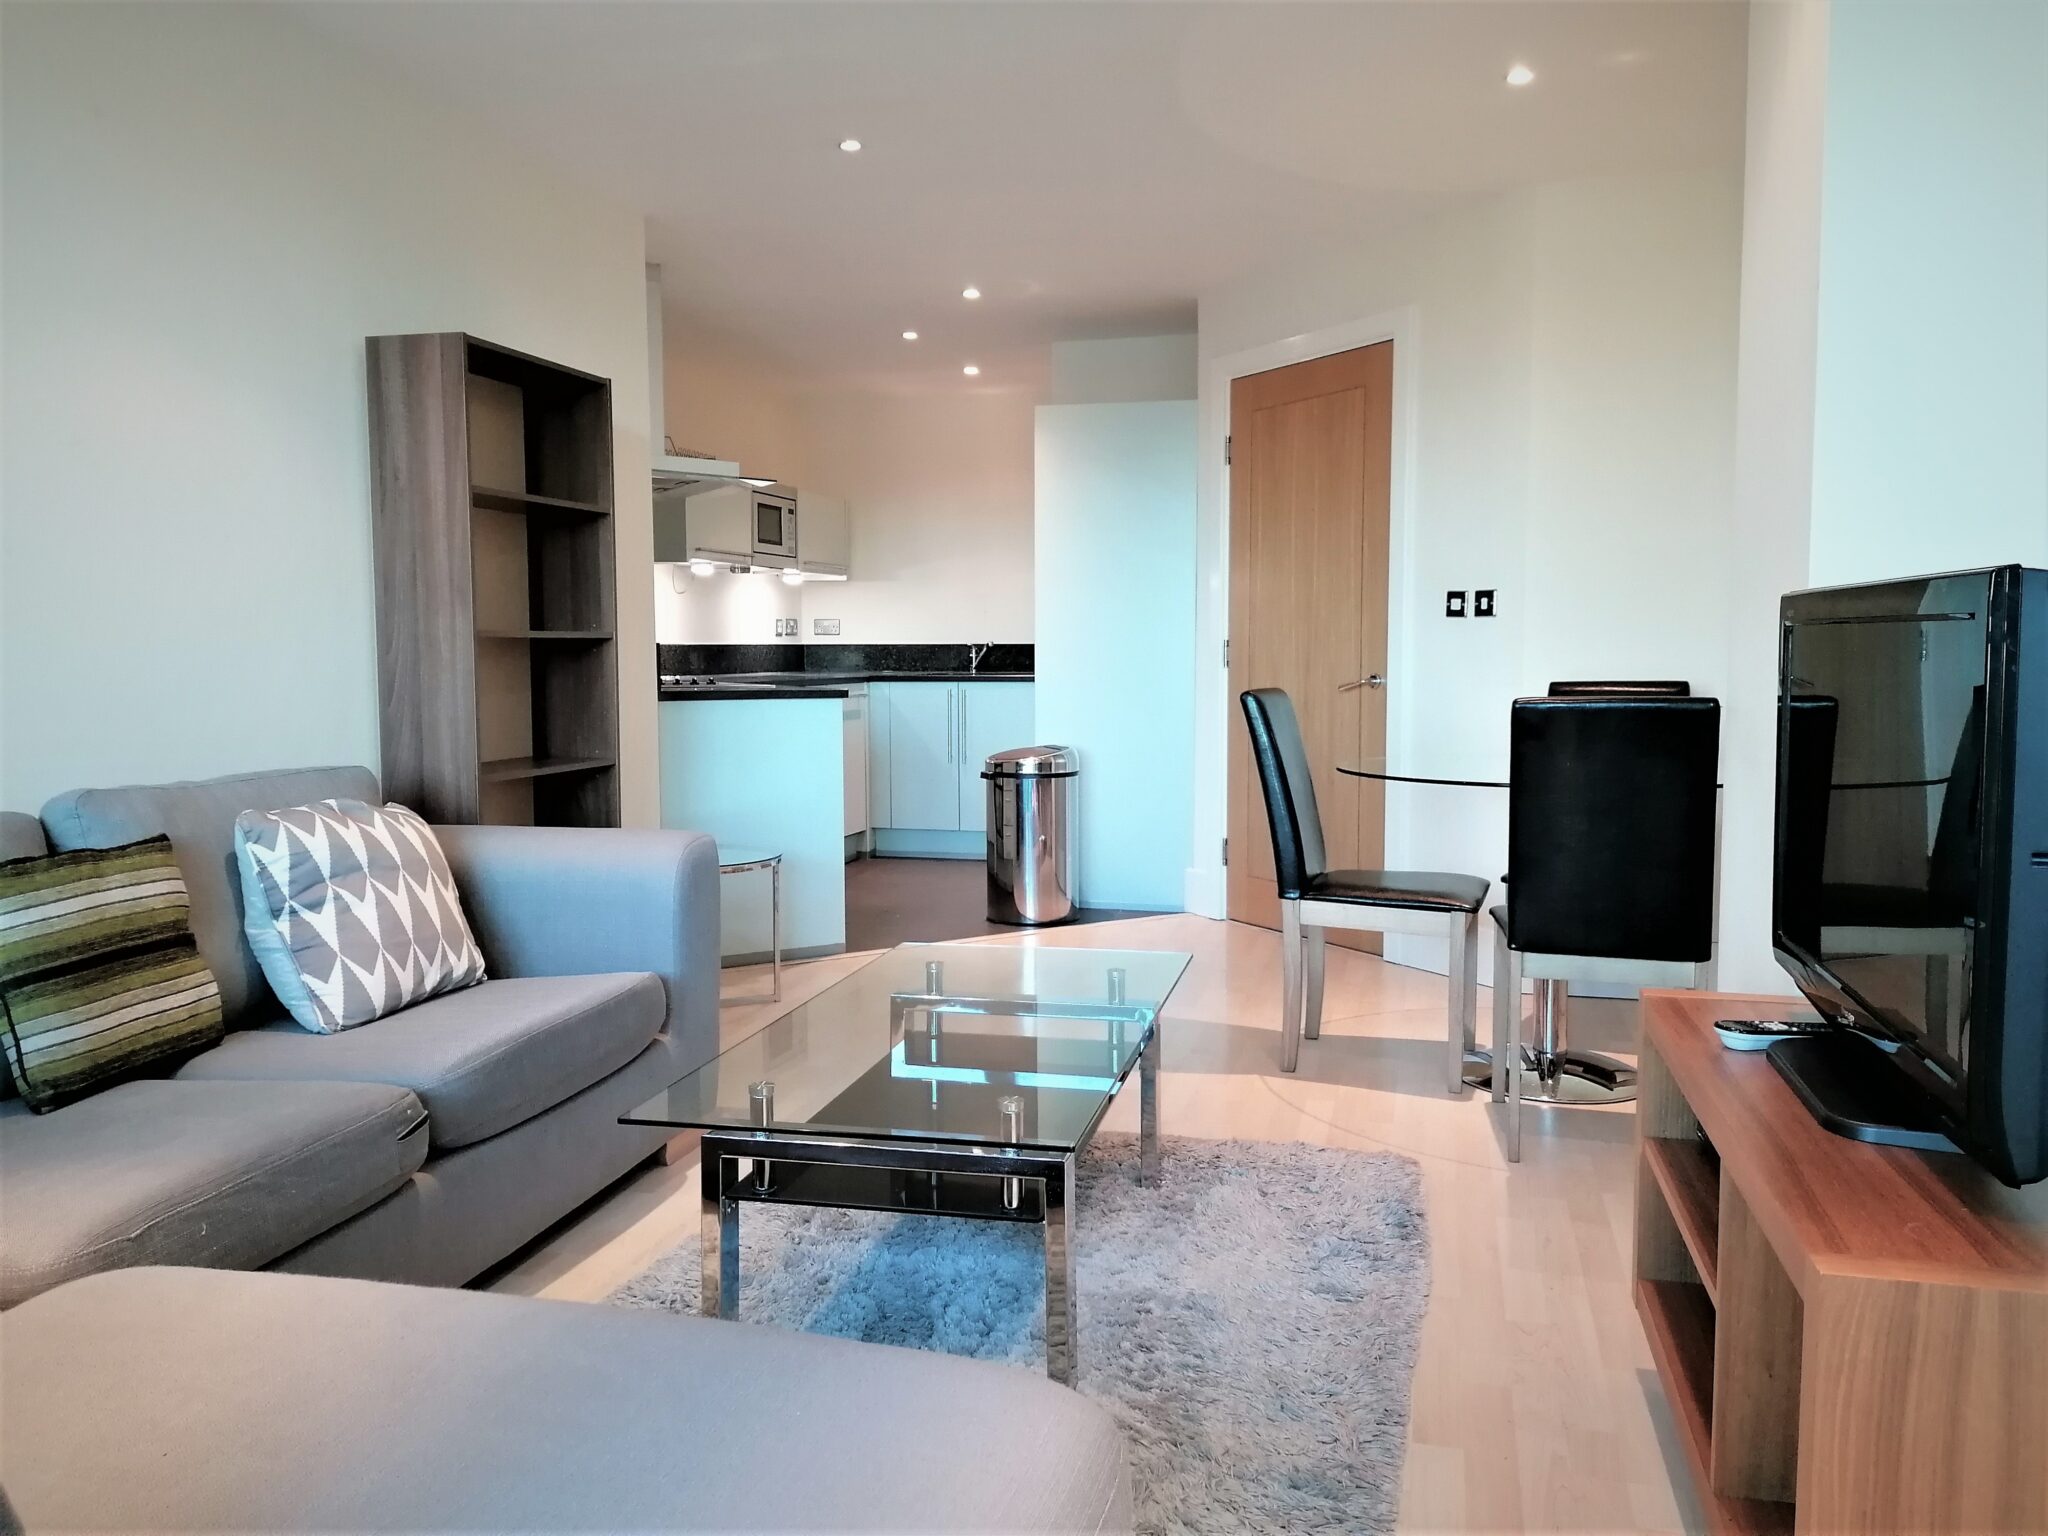 Shortlet Regent’s Park Serviced Apartments - North London Serviced Apartments - London | Urban Stay